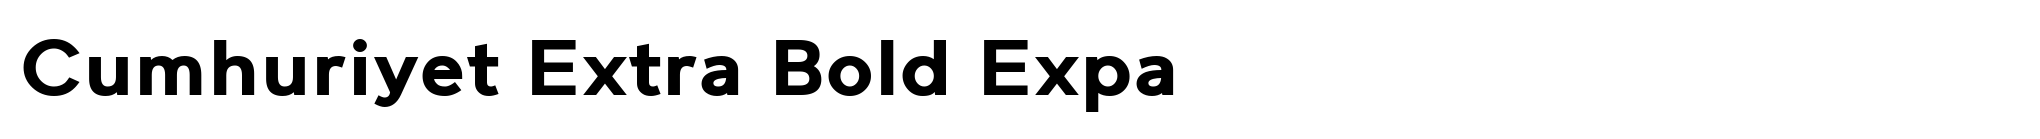 Cumhuriyet Extra Bold Expa image